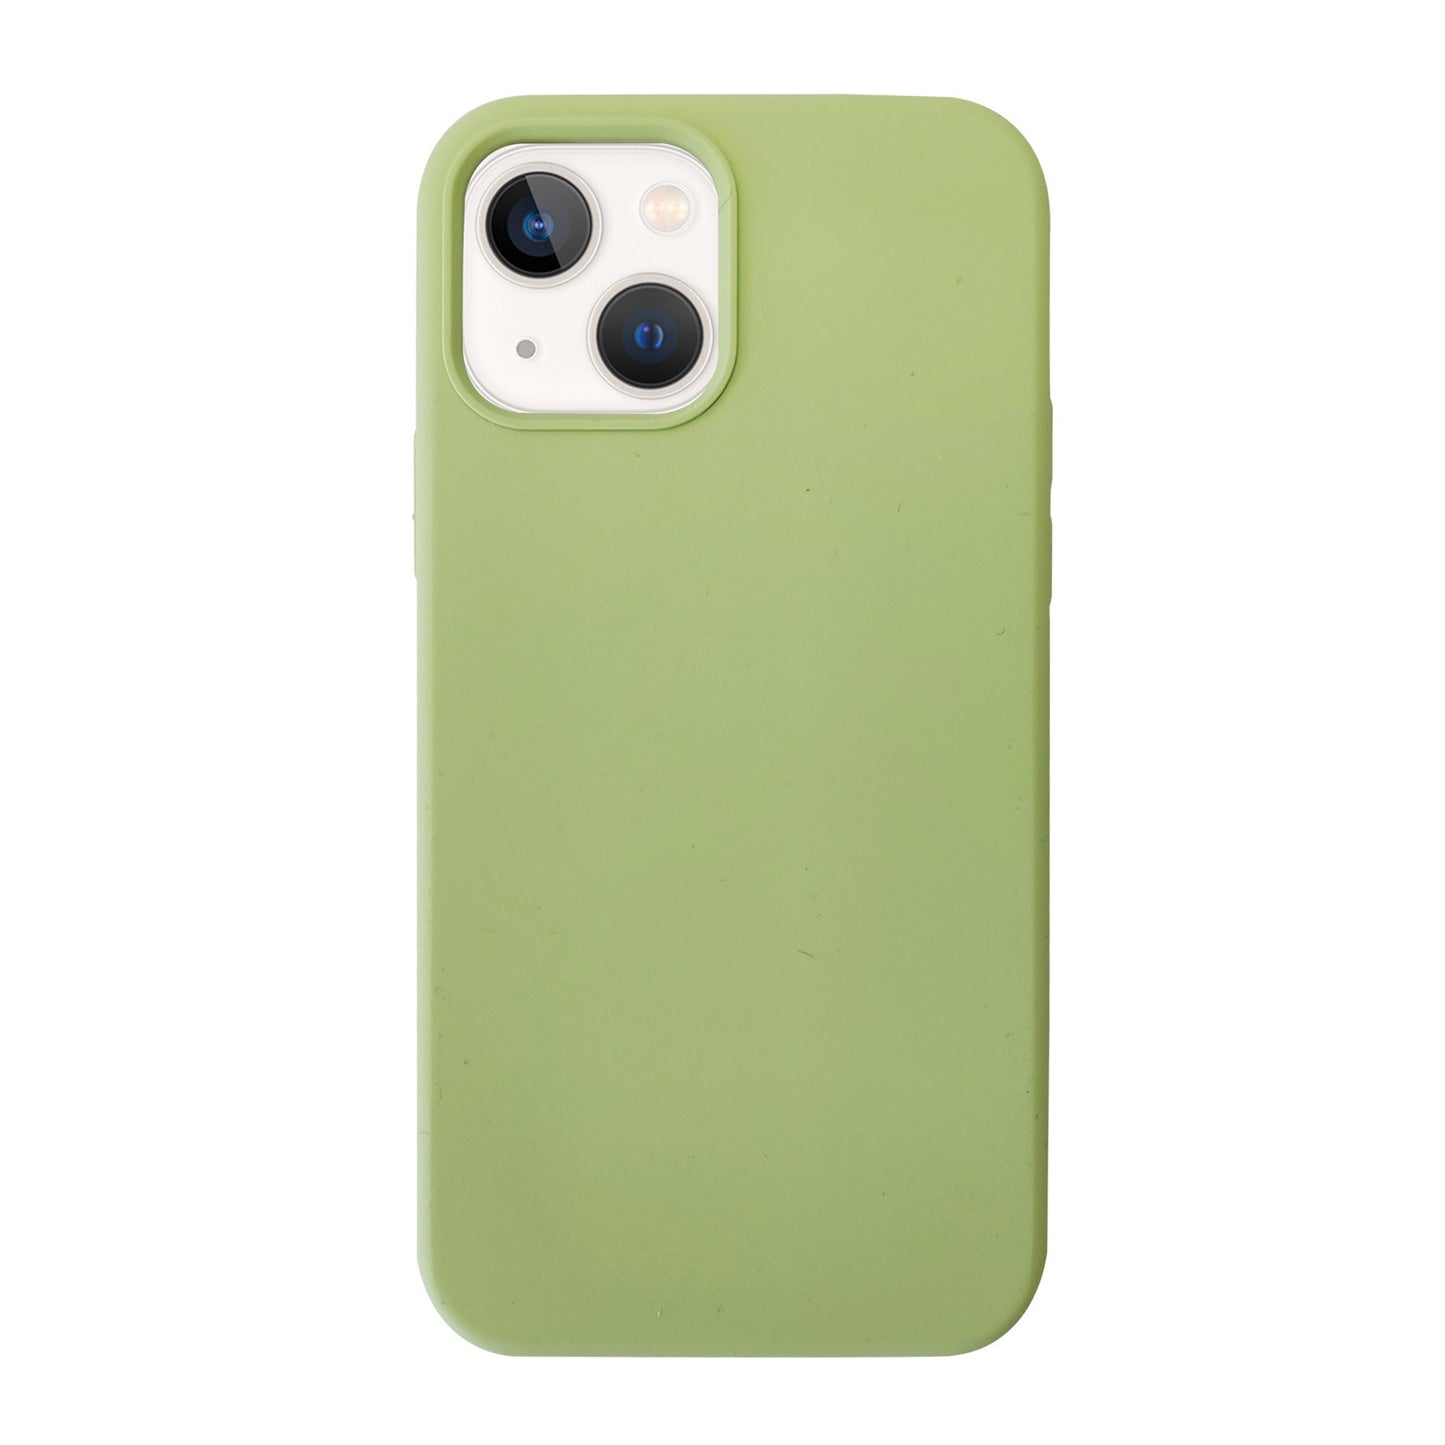 iPhone 13 Uunique Mint Green Liquid Silicone Case - 15-08925